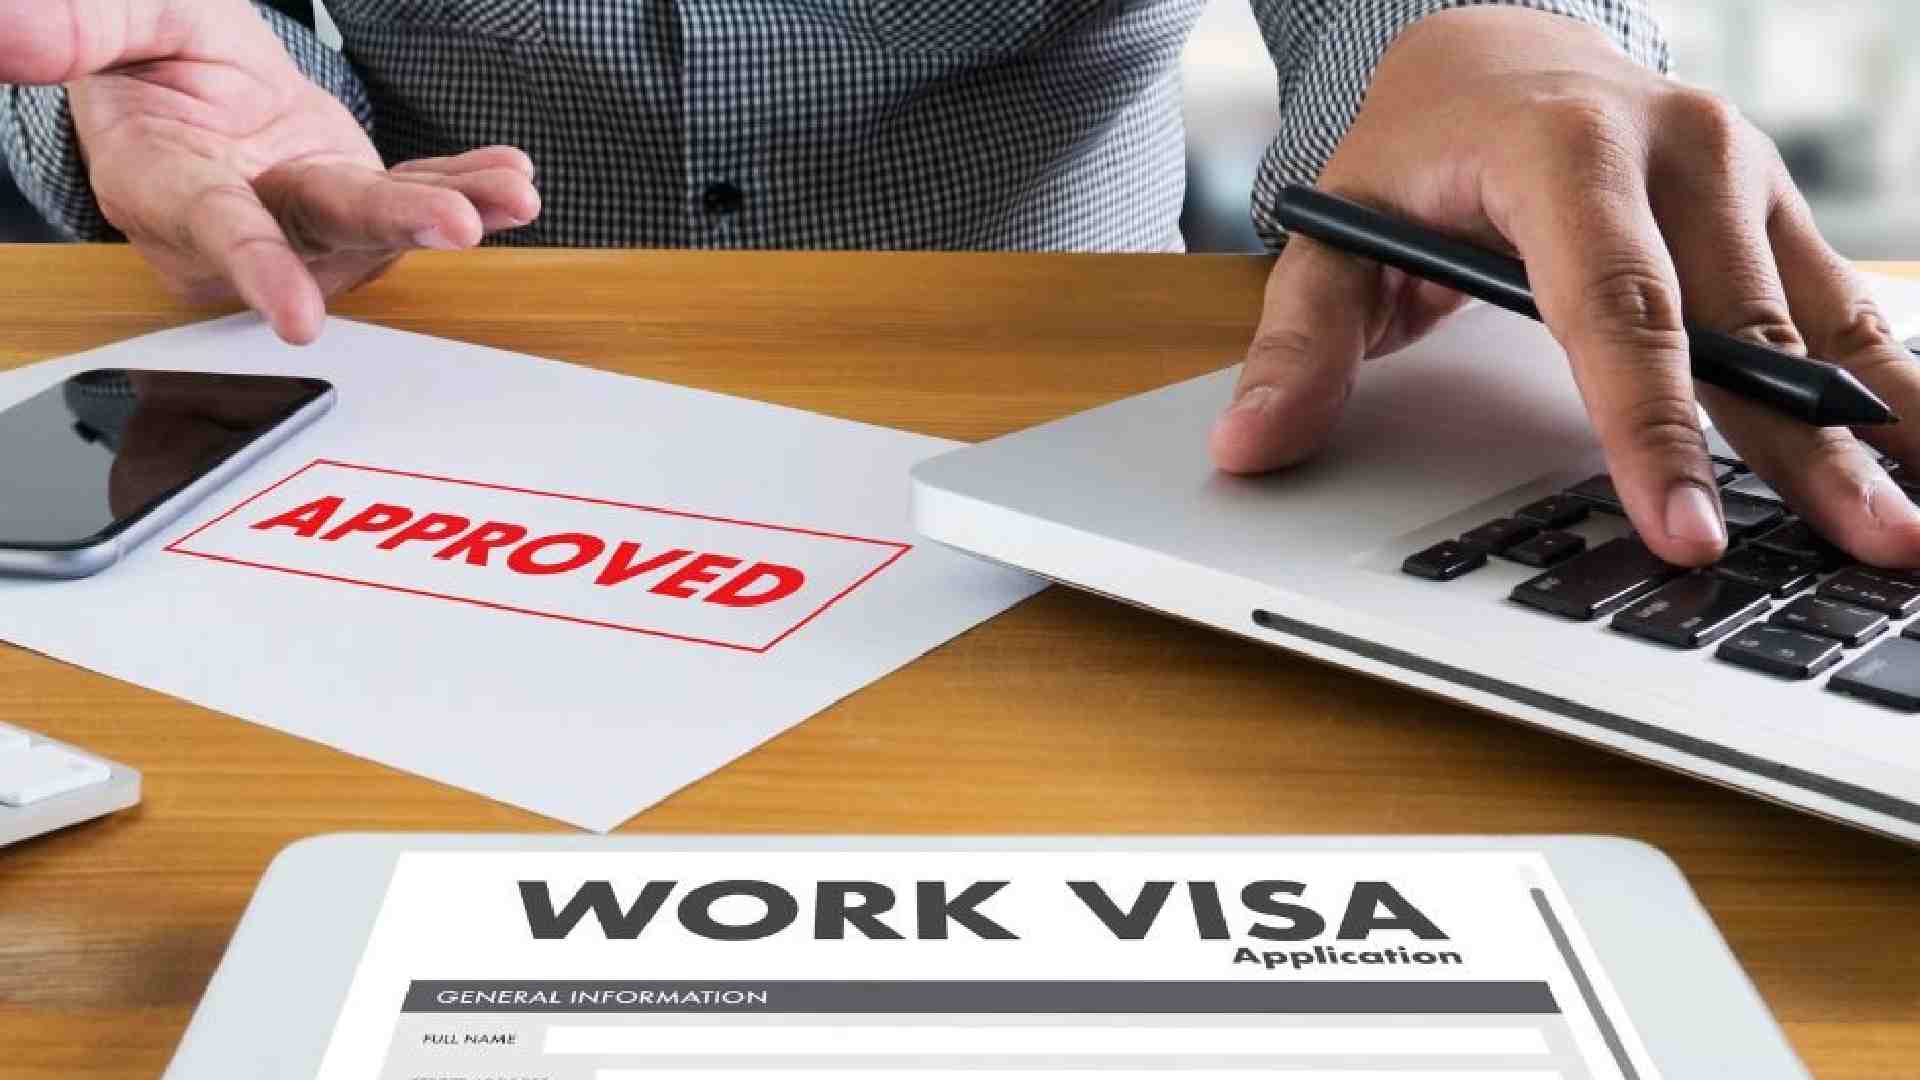 Employment Visa